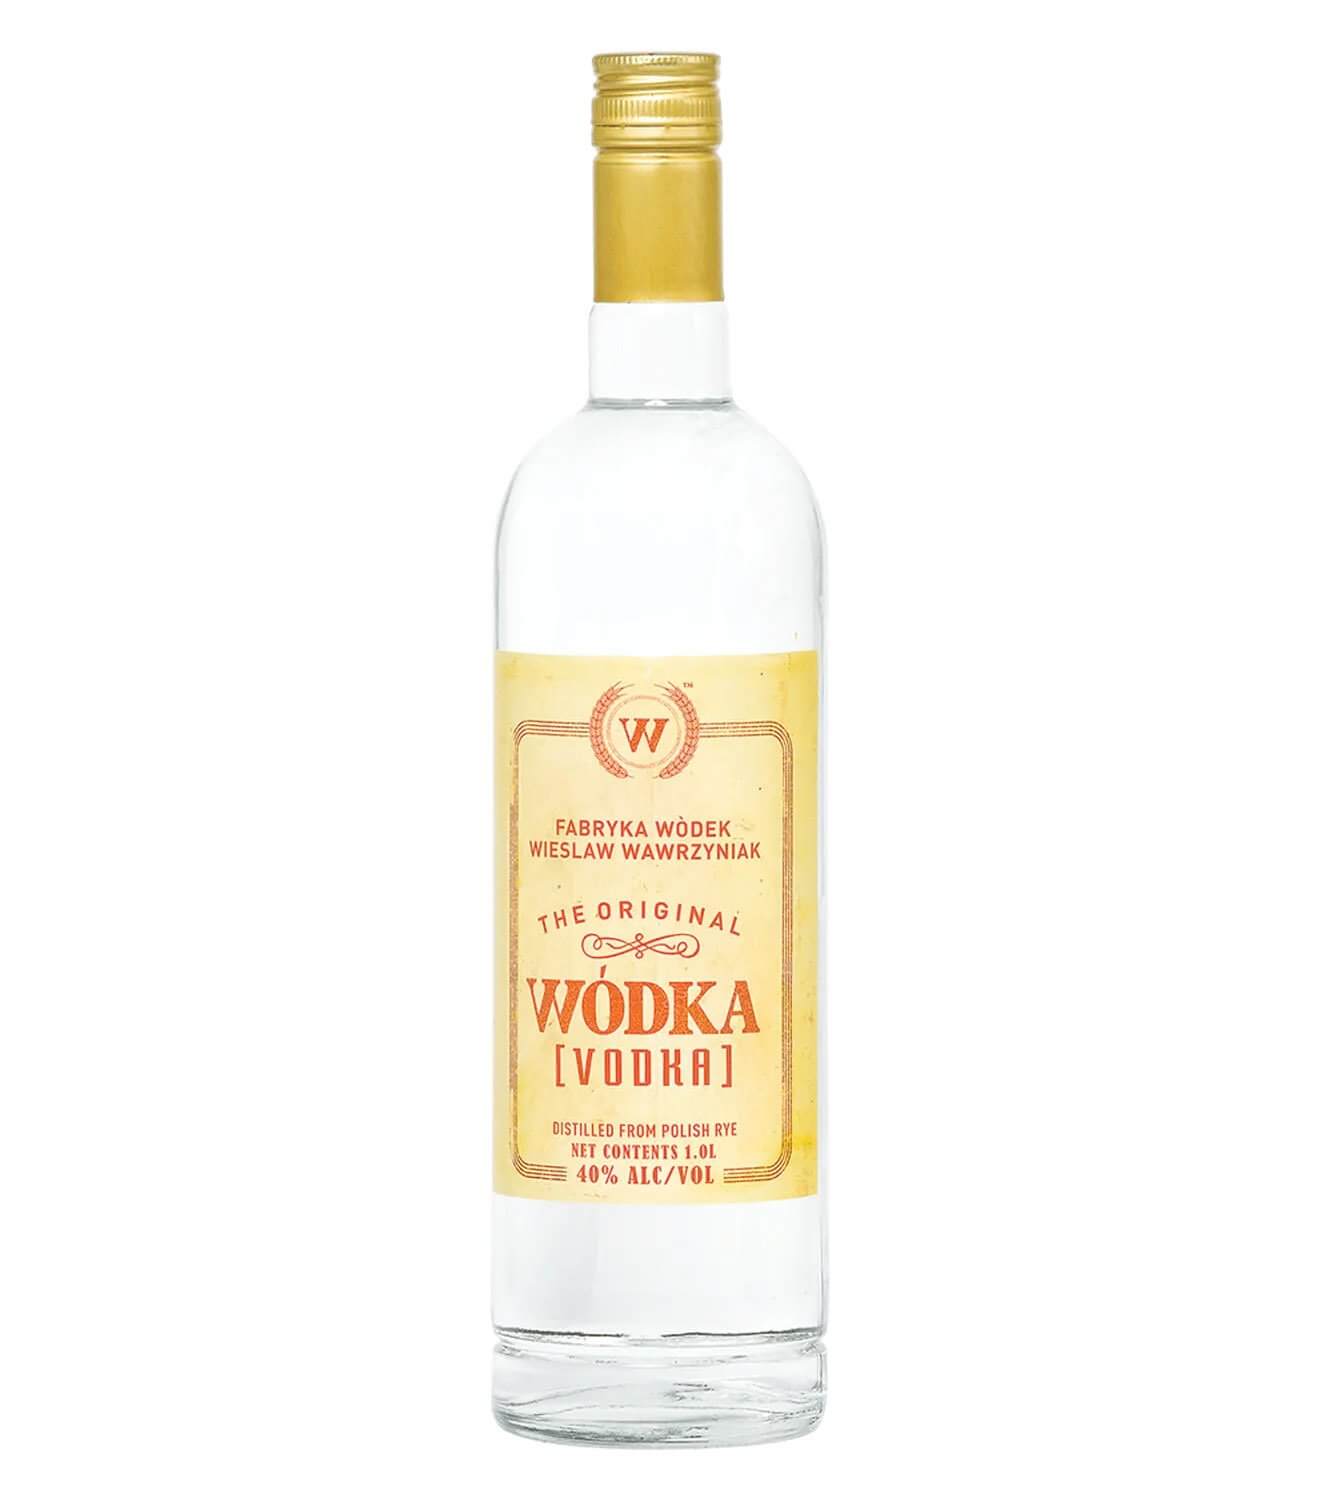 Belvedere (Pol) VS. Sobieski (Pol) Rye Vodkas